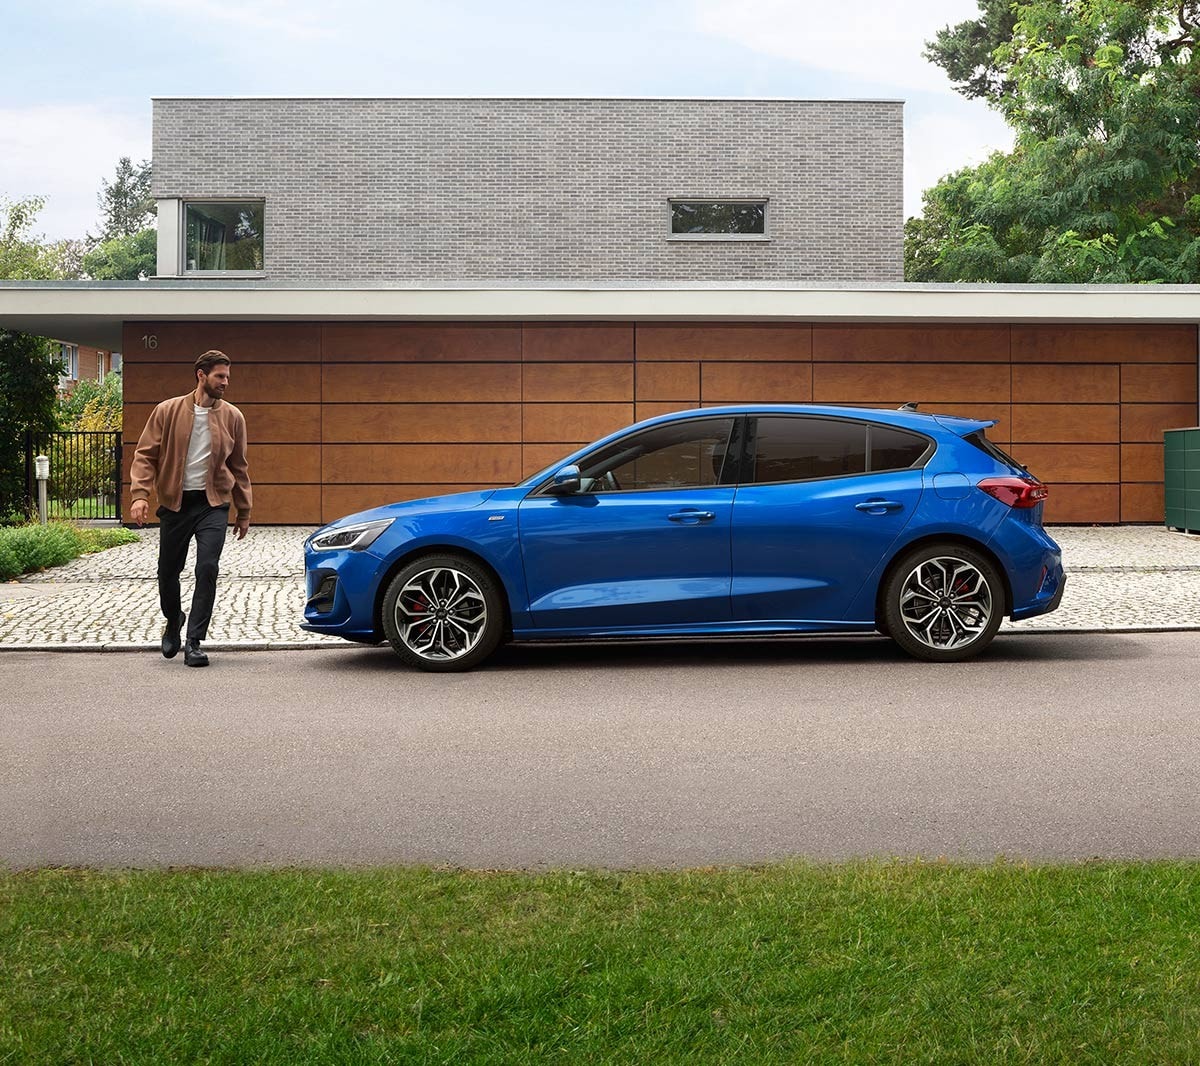 Ford Focus in Blau. Seitenansicht, vor einem modernen Haus parkend. Ein Mann läuft daneben.